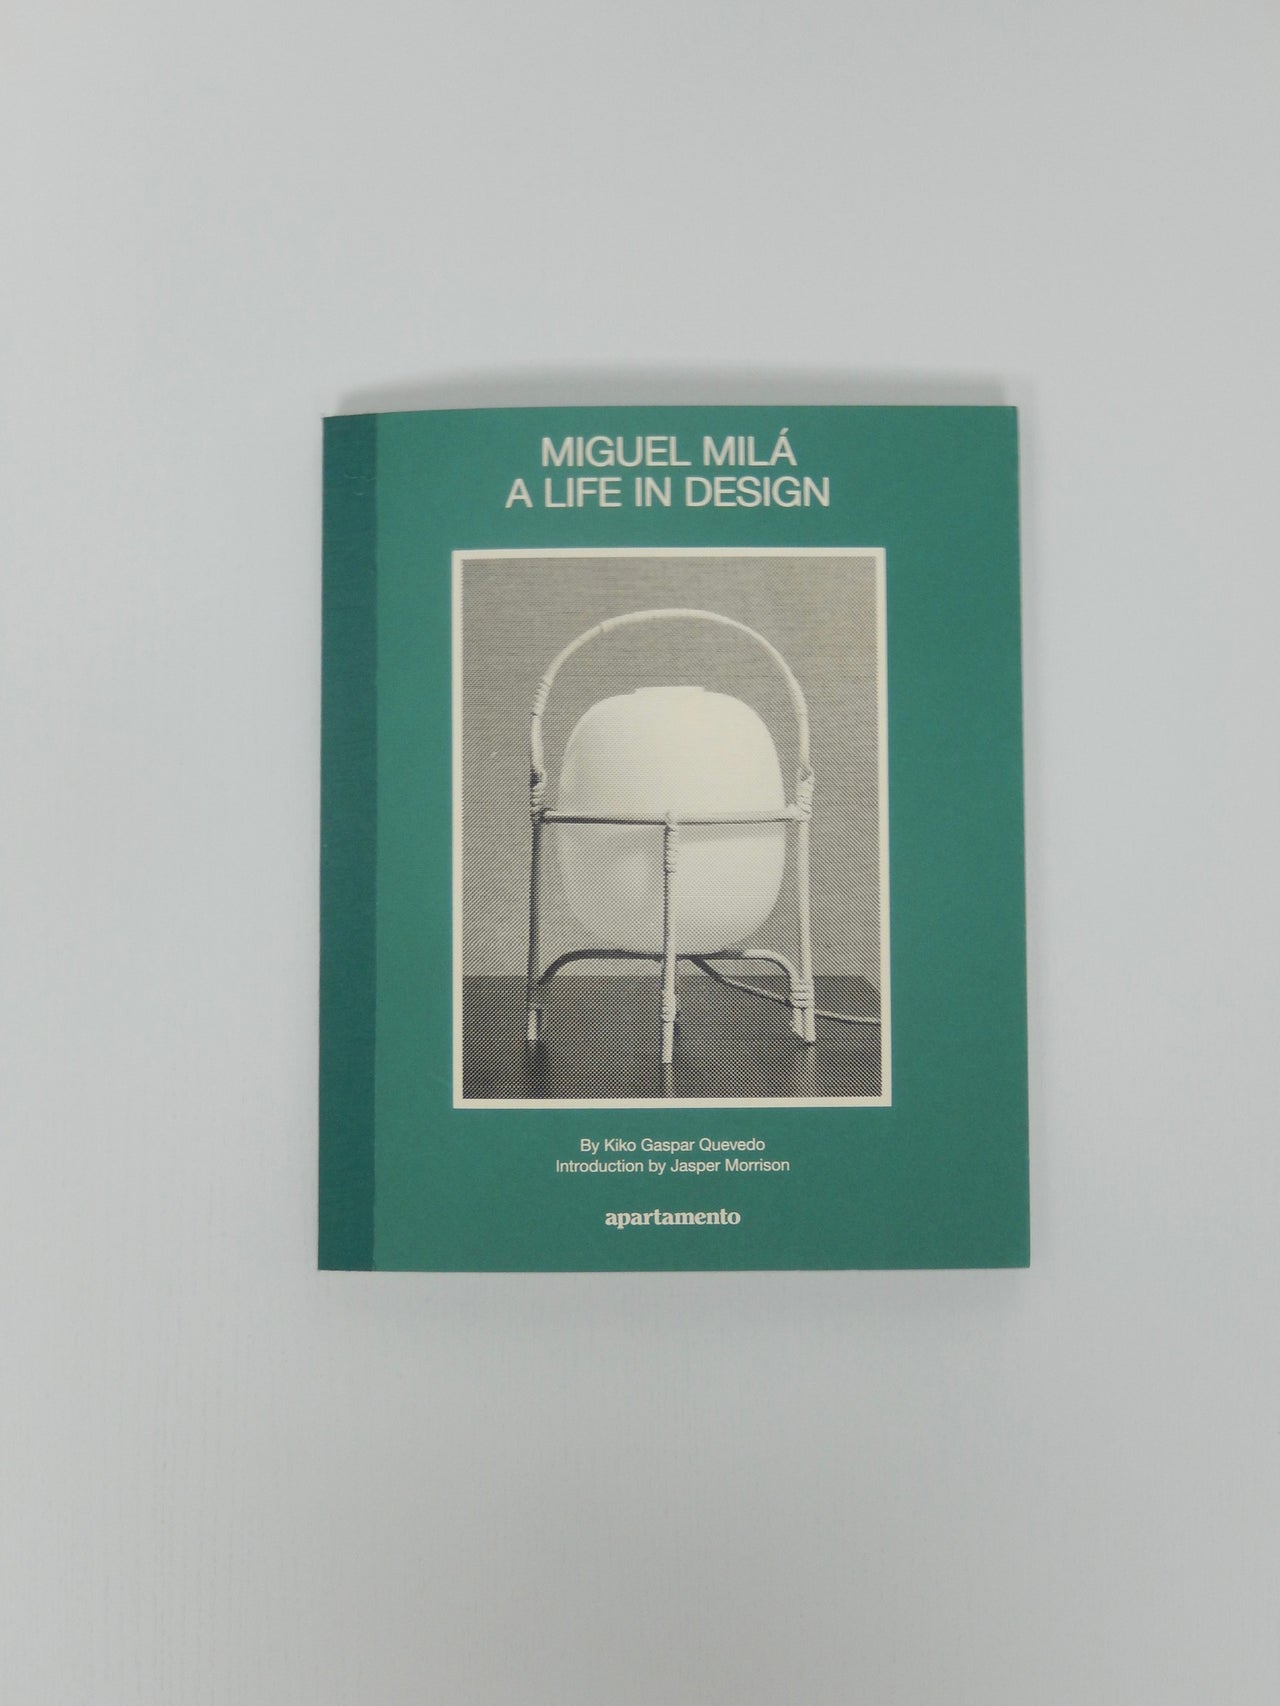 Miguel Mila - A life in design by apartamento